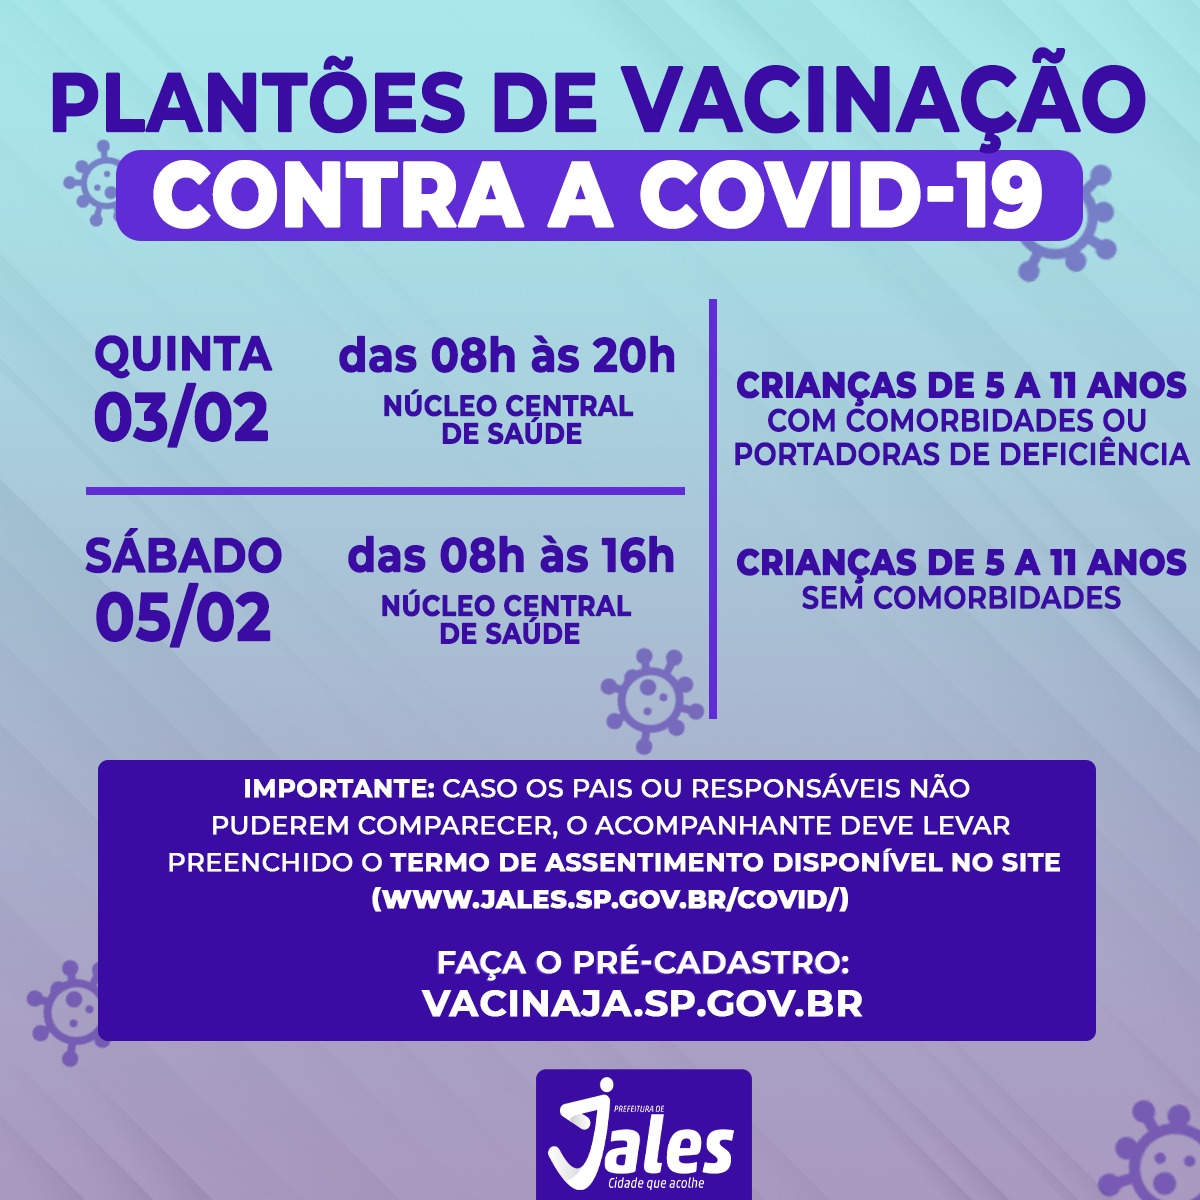 Jales terá Plantão de Vacinação contra a covid-19 na quinta-feira e no sábado no Núcleo Central de Saúde